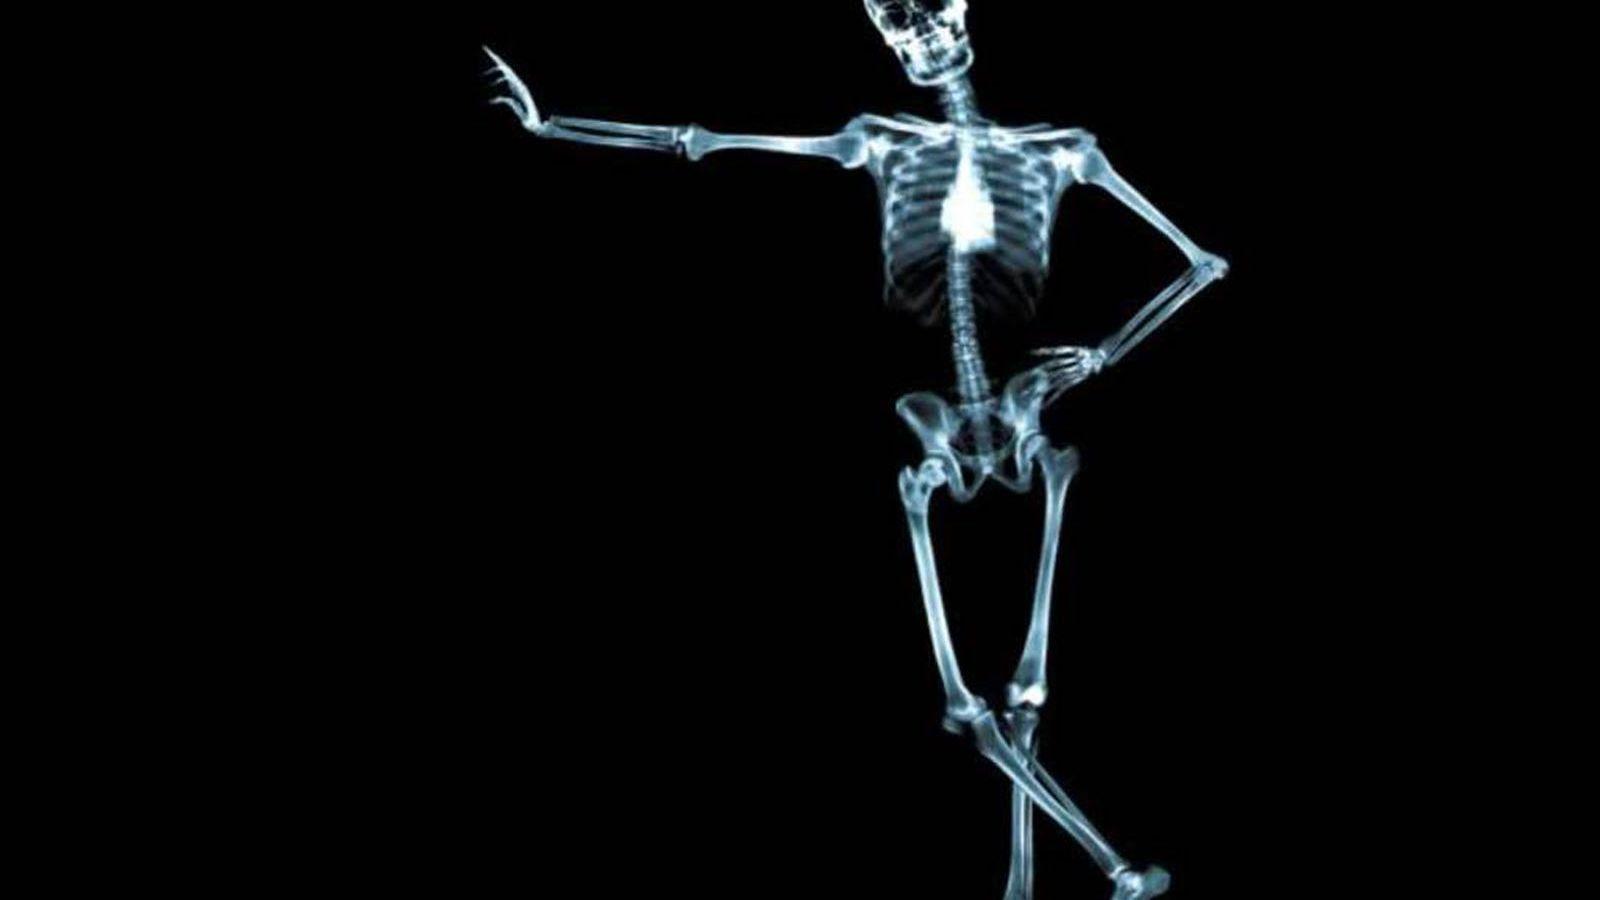 1600x900 Hình nền tải xuống miễn phí Skeleton Wallpaper [1600x1200] cho Máy tính để bàn, Di động & Máy tính bảng của bạn. Khám phá Hình nền Bộ xương dễ thương. Hình nền bộ xương dễ thương, Hình nền bộ xương, Hình nền bộ xương